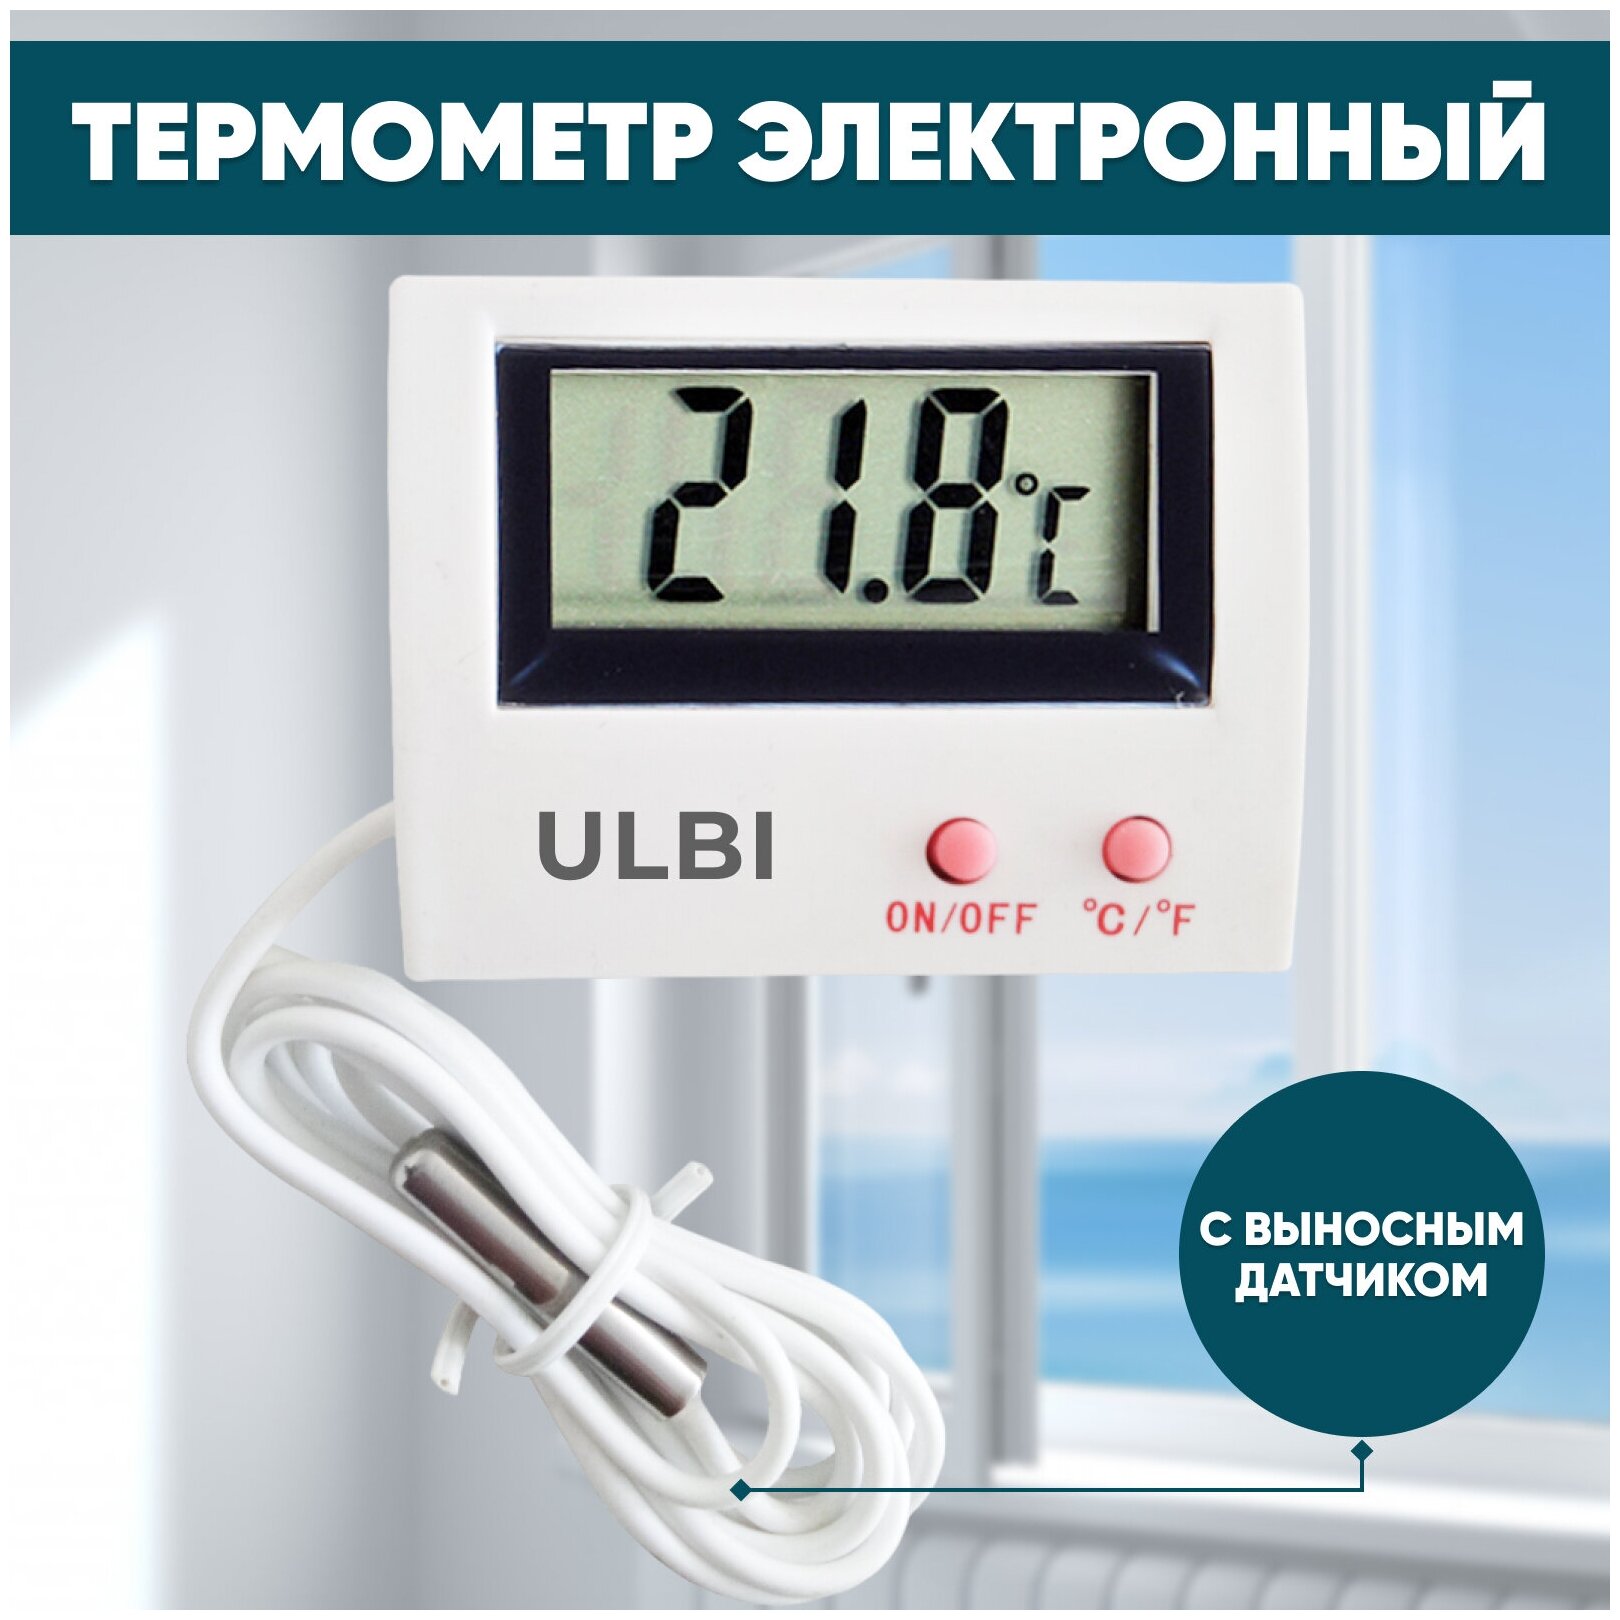 Термометр электронный с выносным датчиком температуры ULBI H4